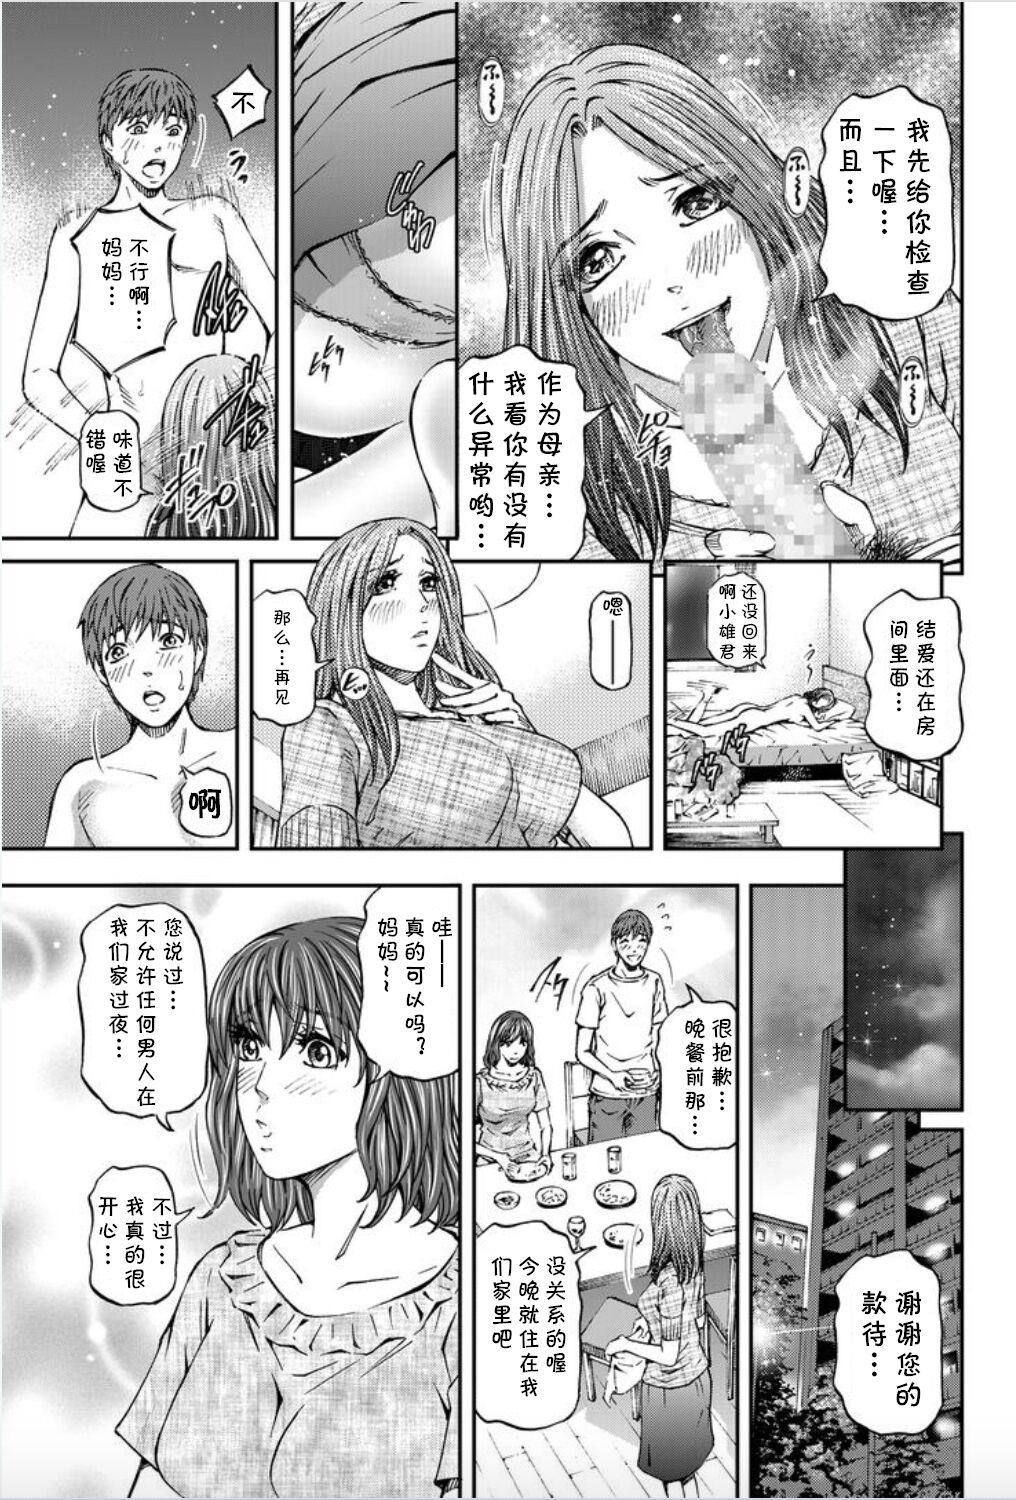 Mms Onna-tachi ga Iku Toki... Ero Drama Vol. 8 Datte, Kanojo no Haha ga... Hot Girl Porn - Page 7